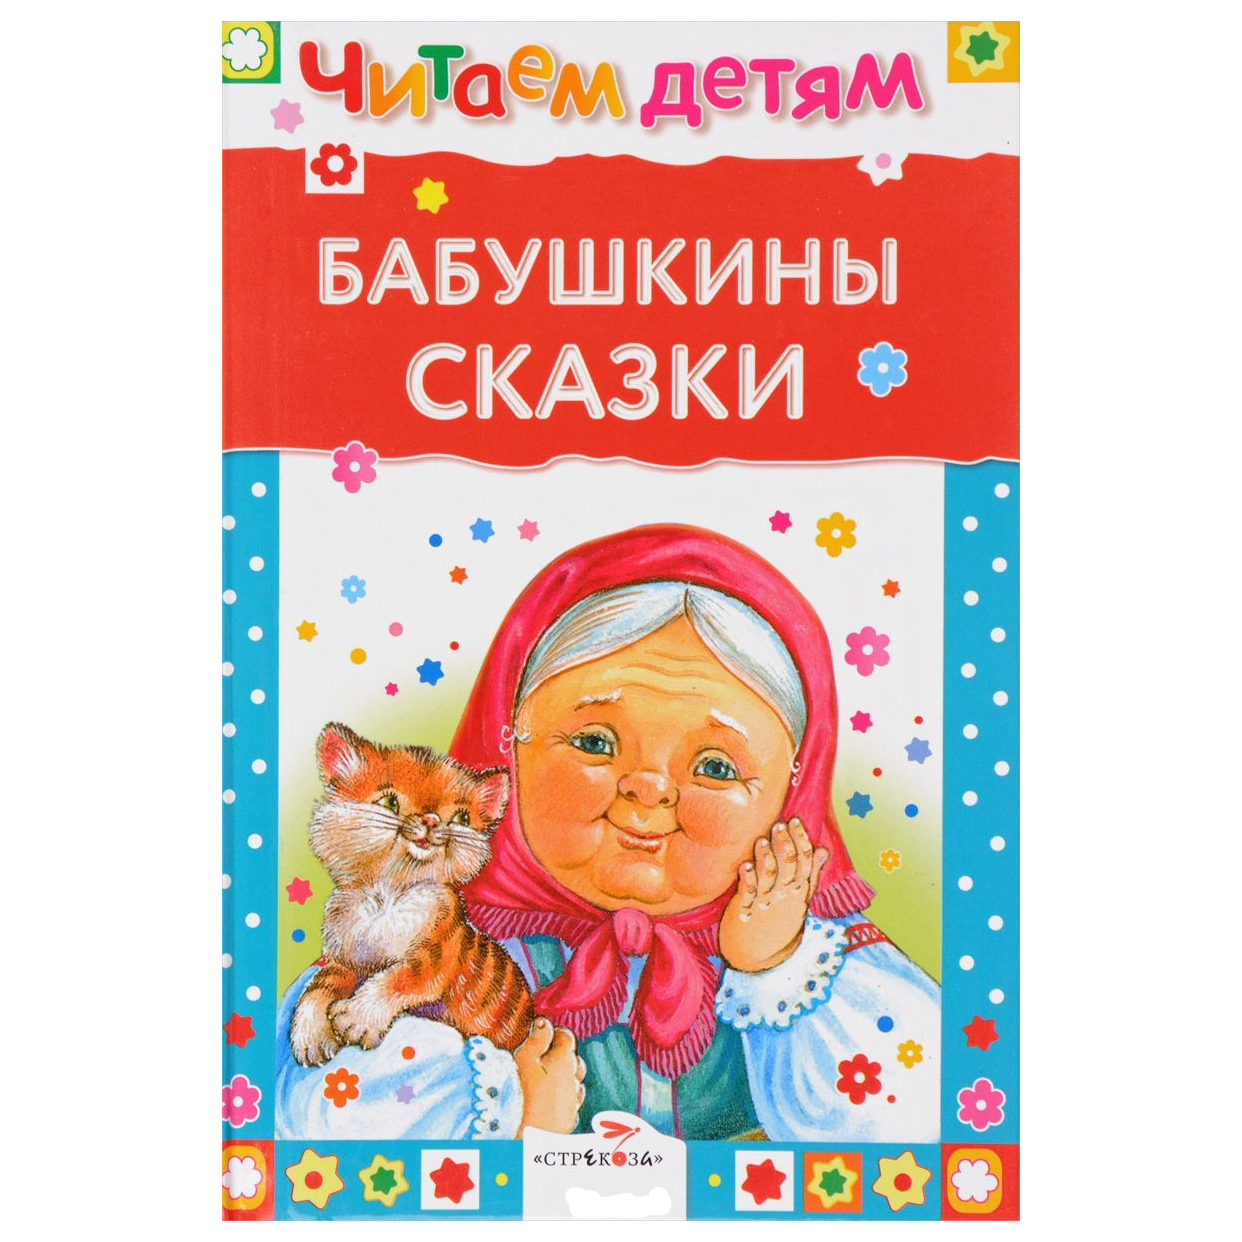 Читаем детям: "Бабушкины сказки"